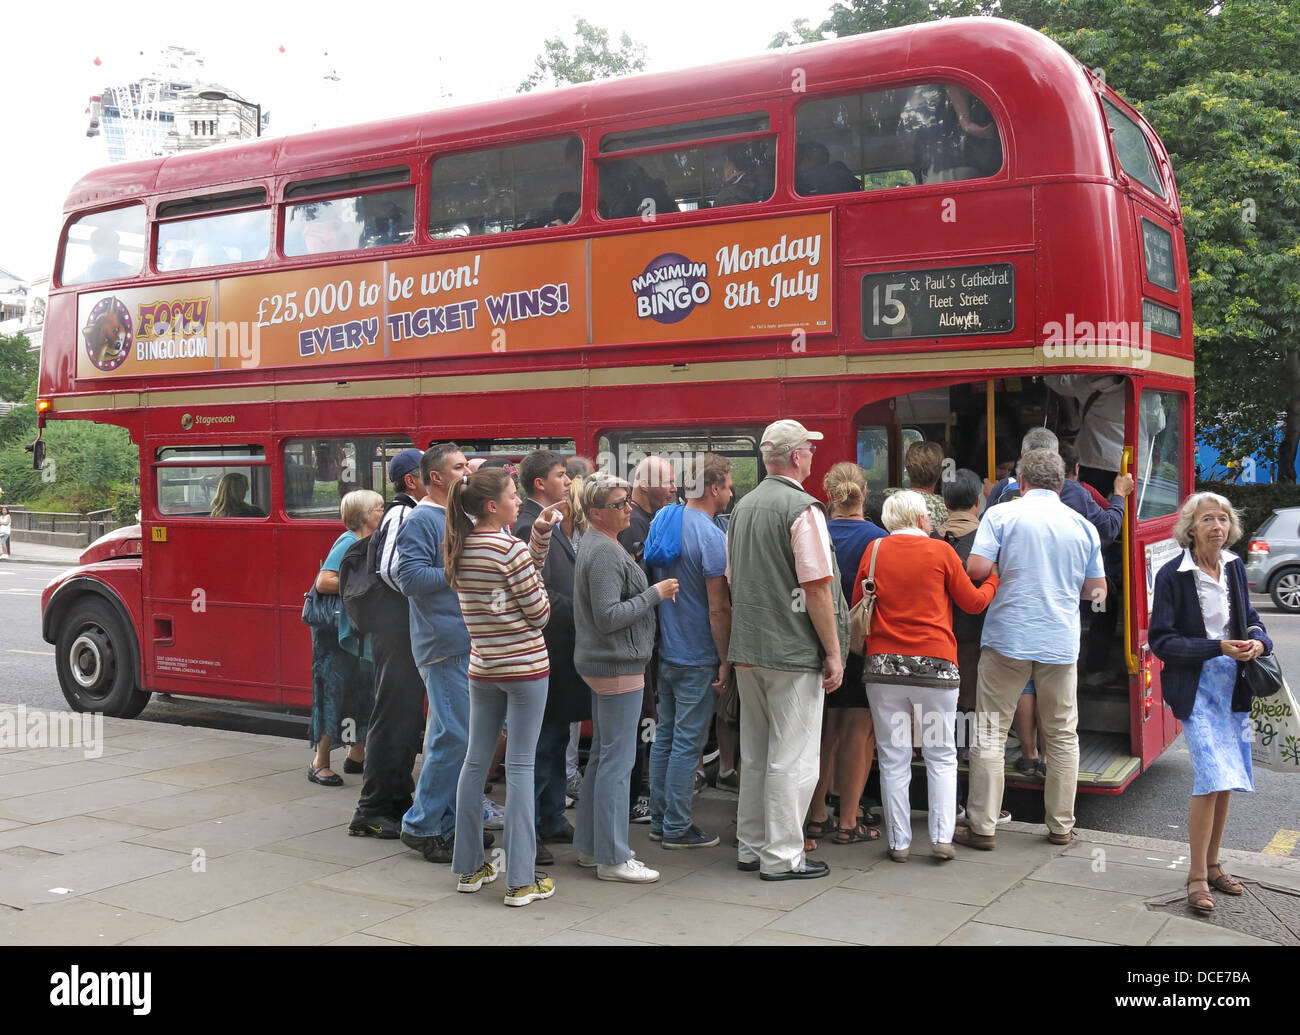 Un groupe de touristes, faisant la queue avec enthousiasme pour monter à bord d'un bus à impériale rouge emblématique de Londres Routemaster , Grande-Bretagne classique Banque D'Images